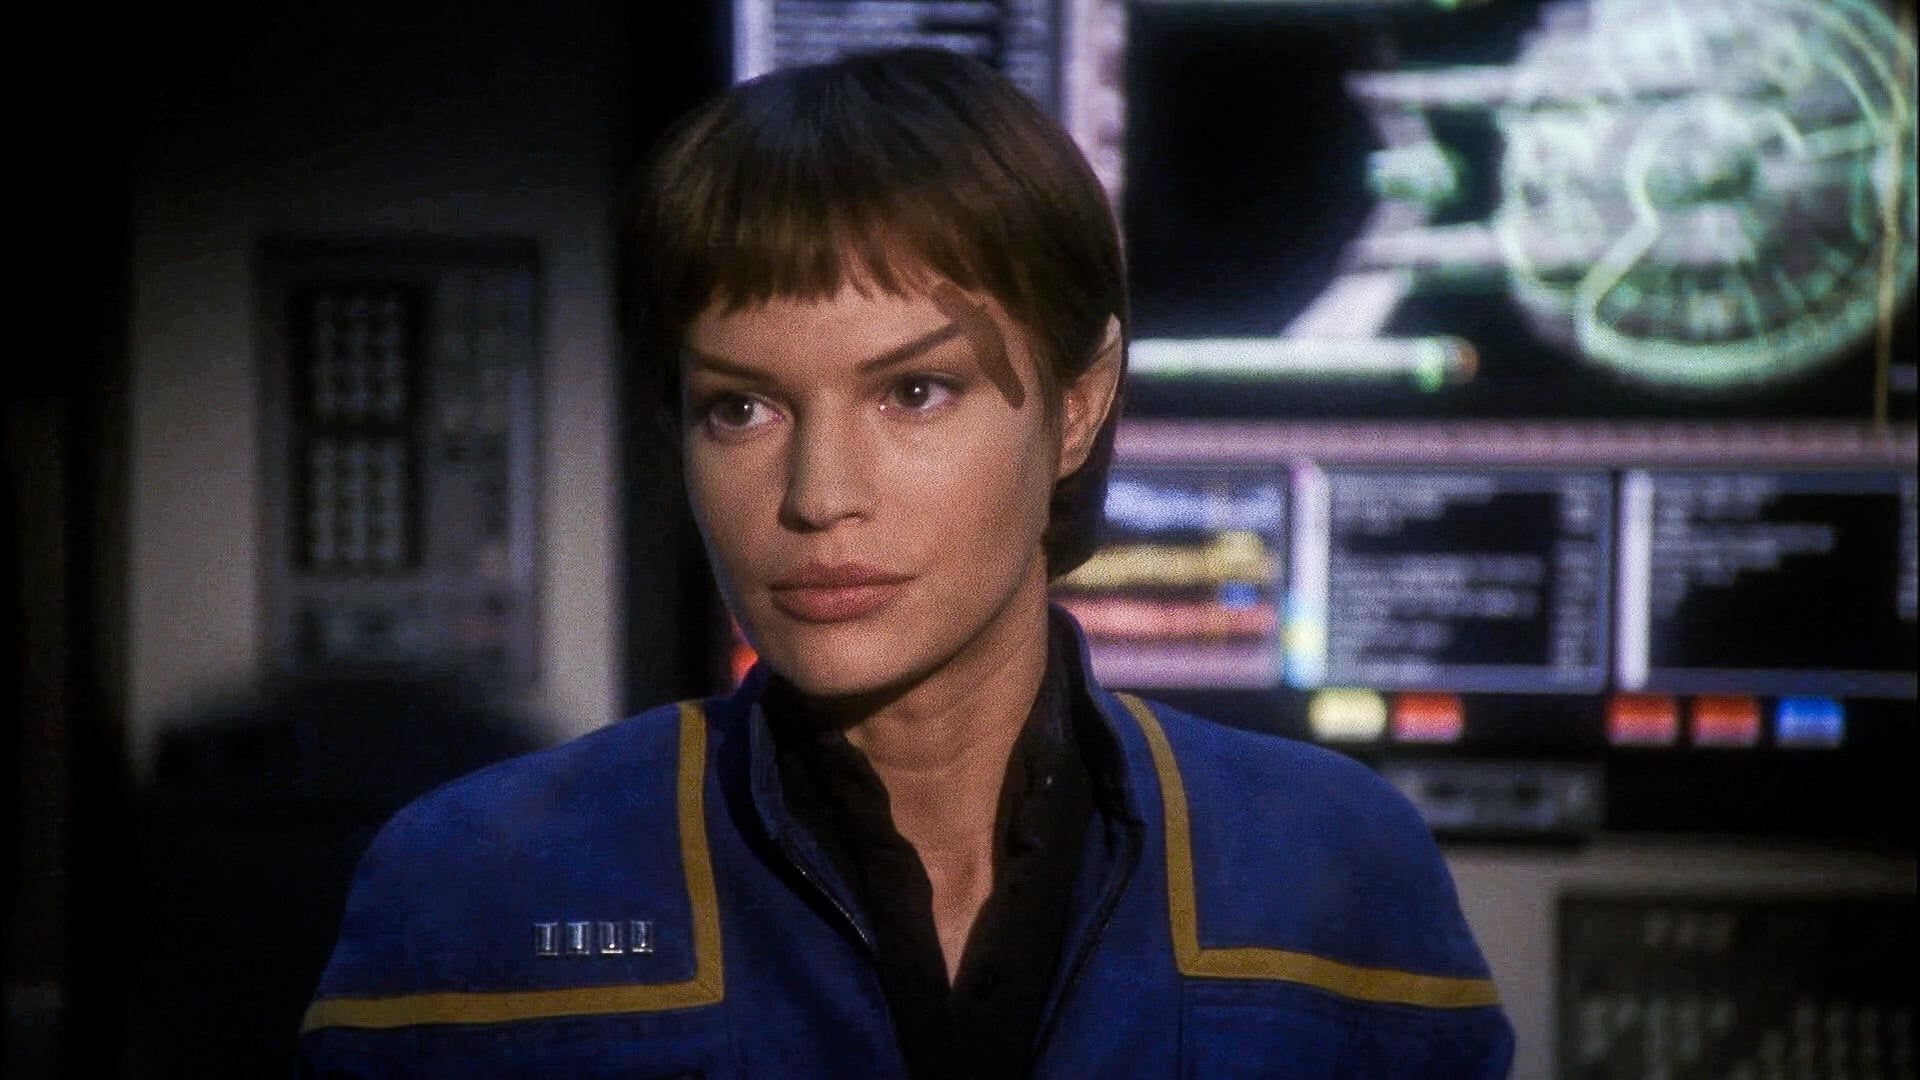 T’Pol (Jolene Blalock) on the bridge of Enterprise in the uniform of captain.